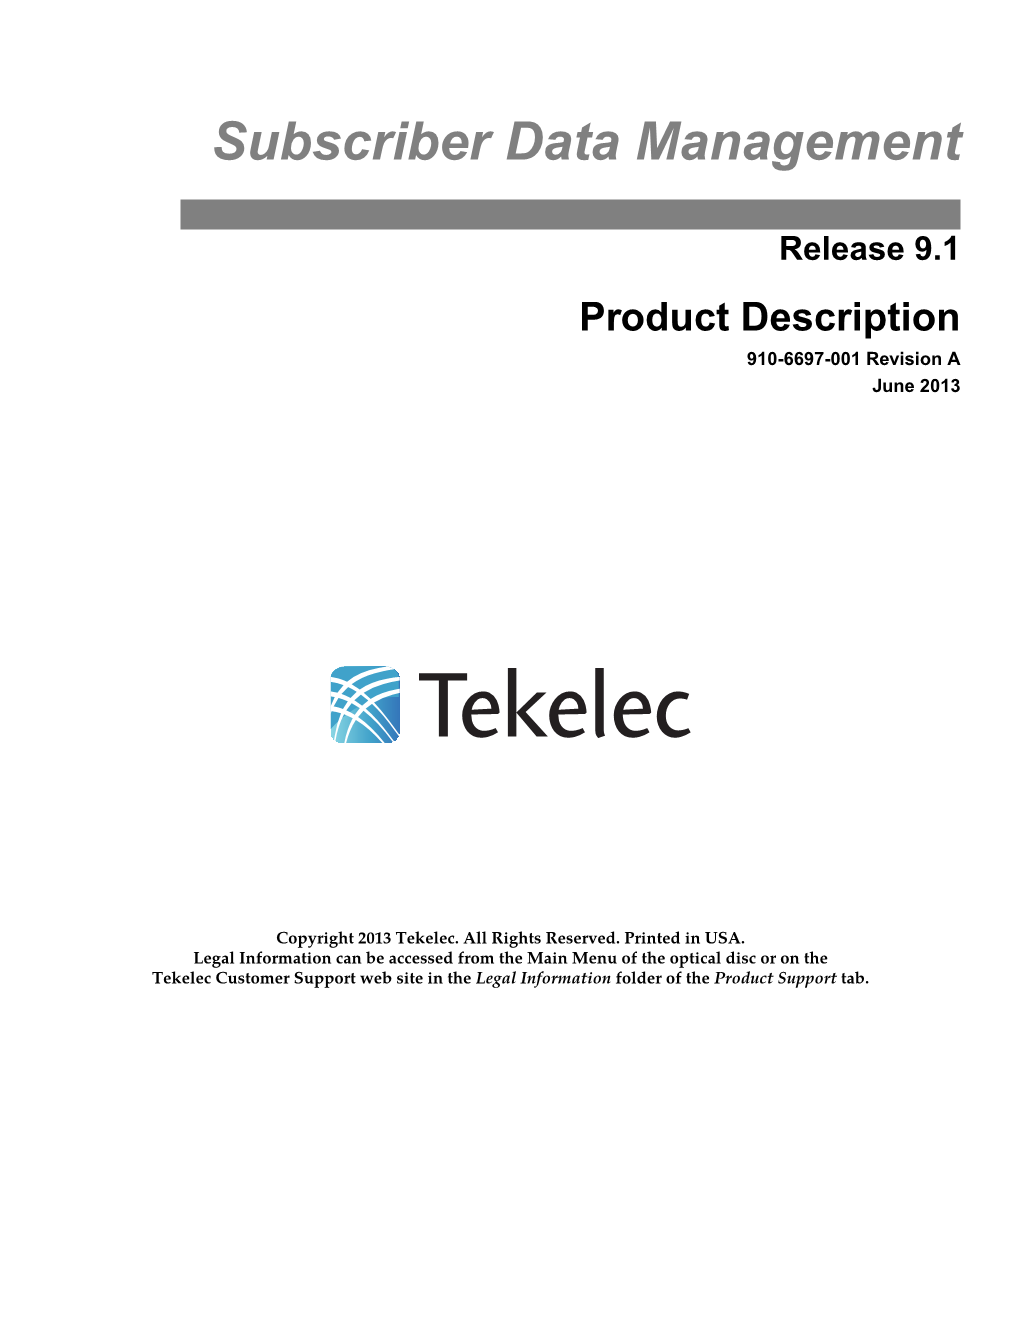 Product Description 910-6697-001 Revision a June 2013